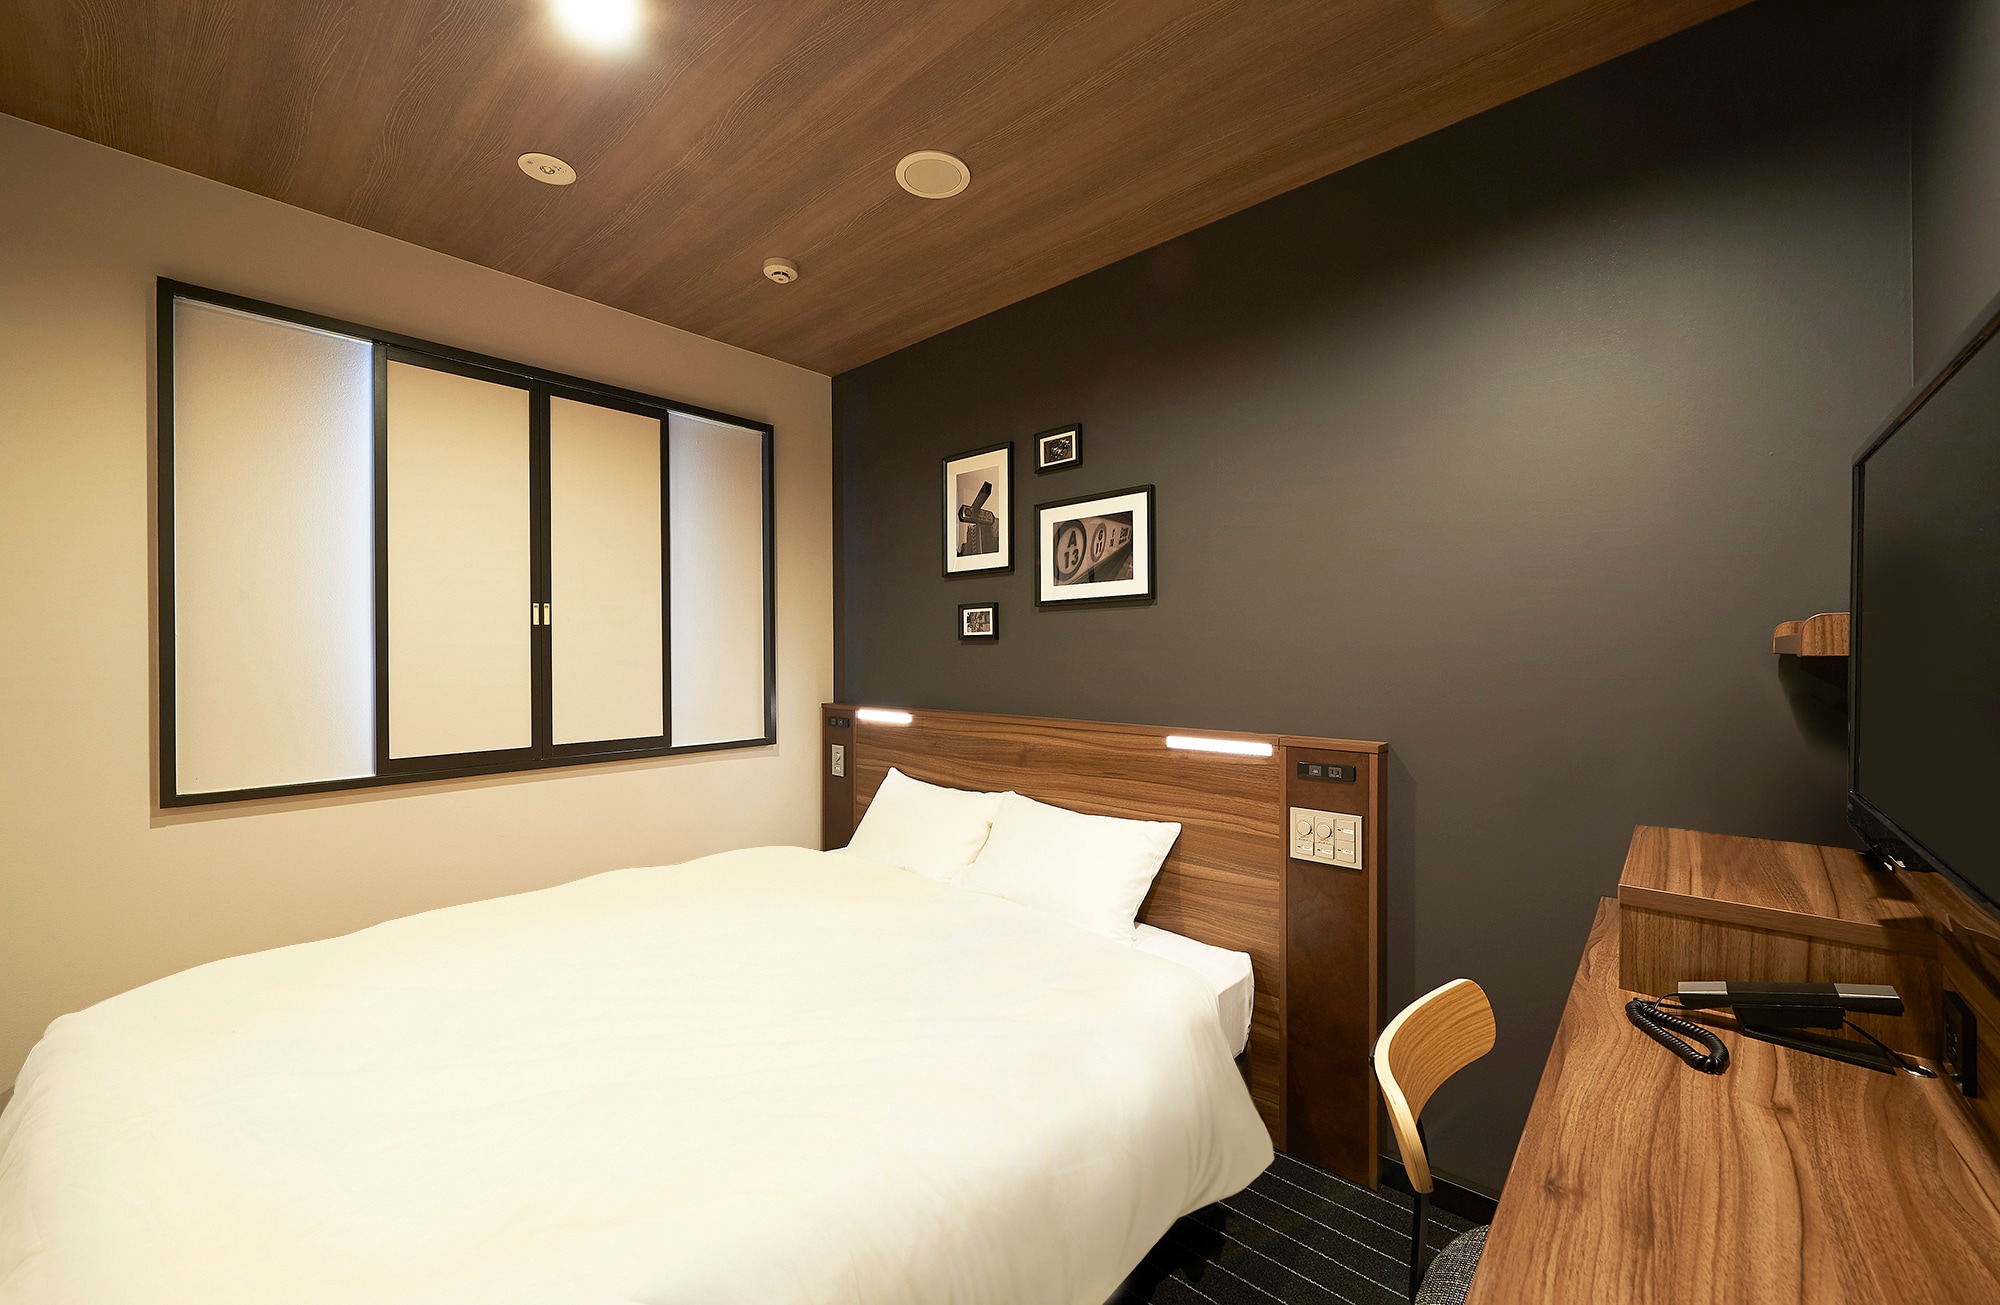 [Guest room] Comfort double room: 12.8㎡, bed width 160cm